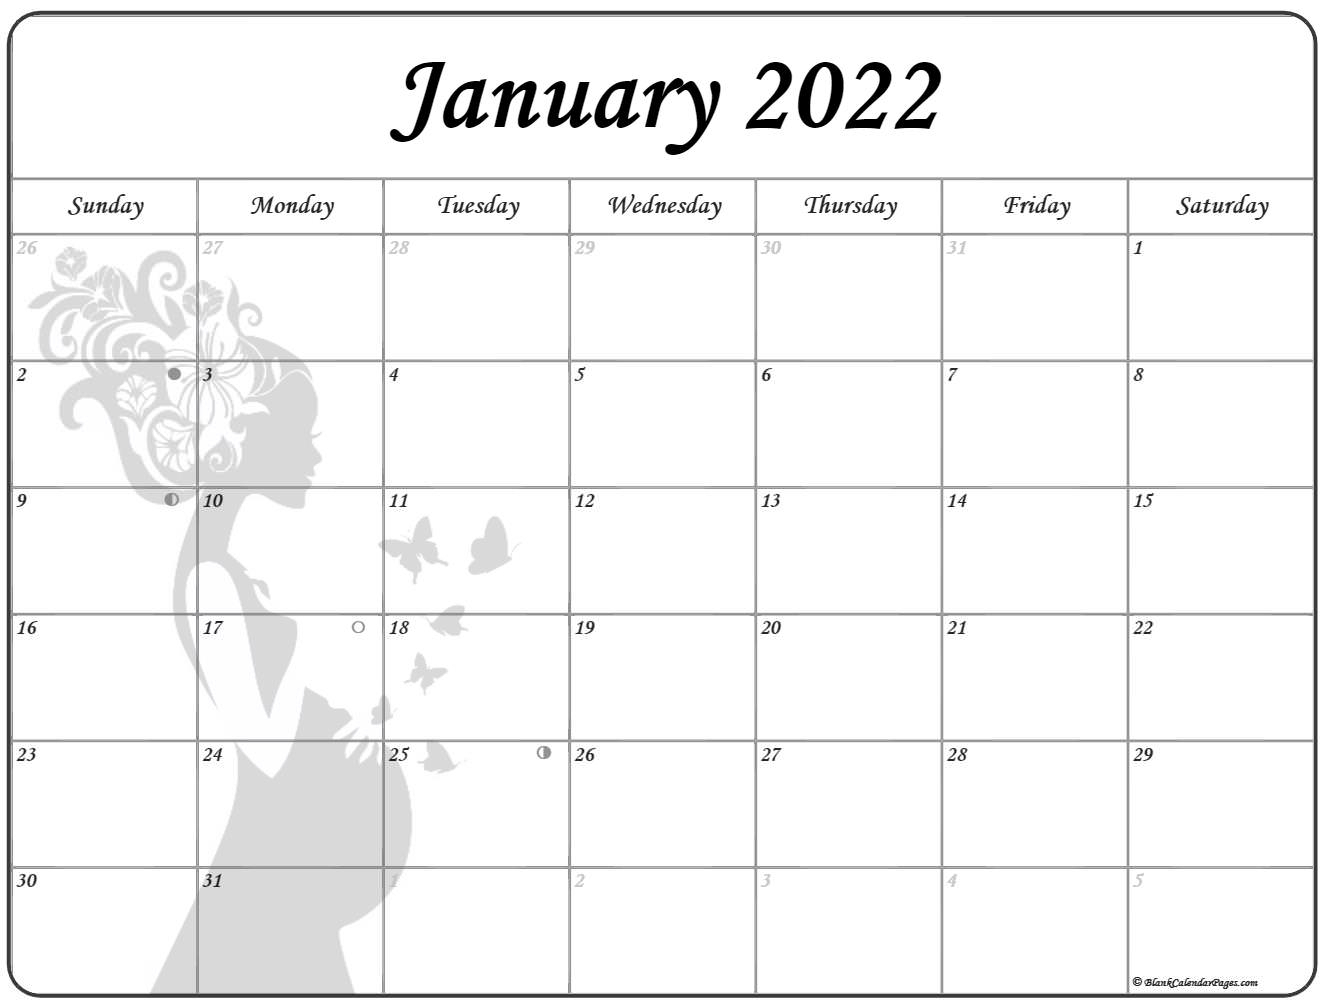 Catch Lunar Calendar June 2022